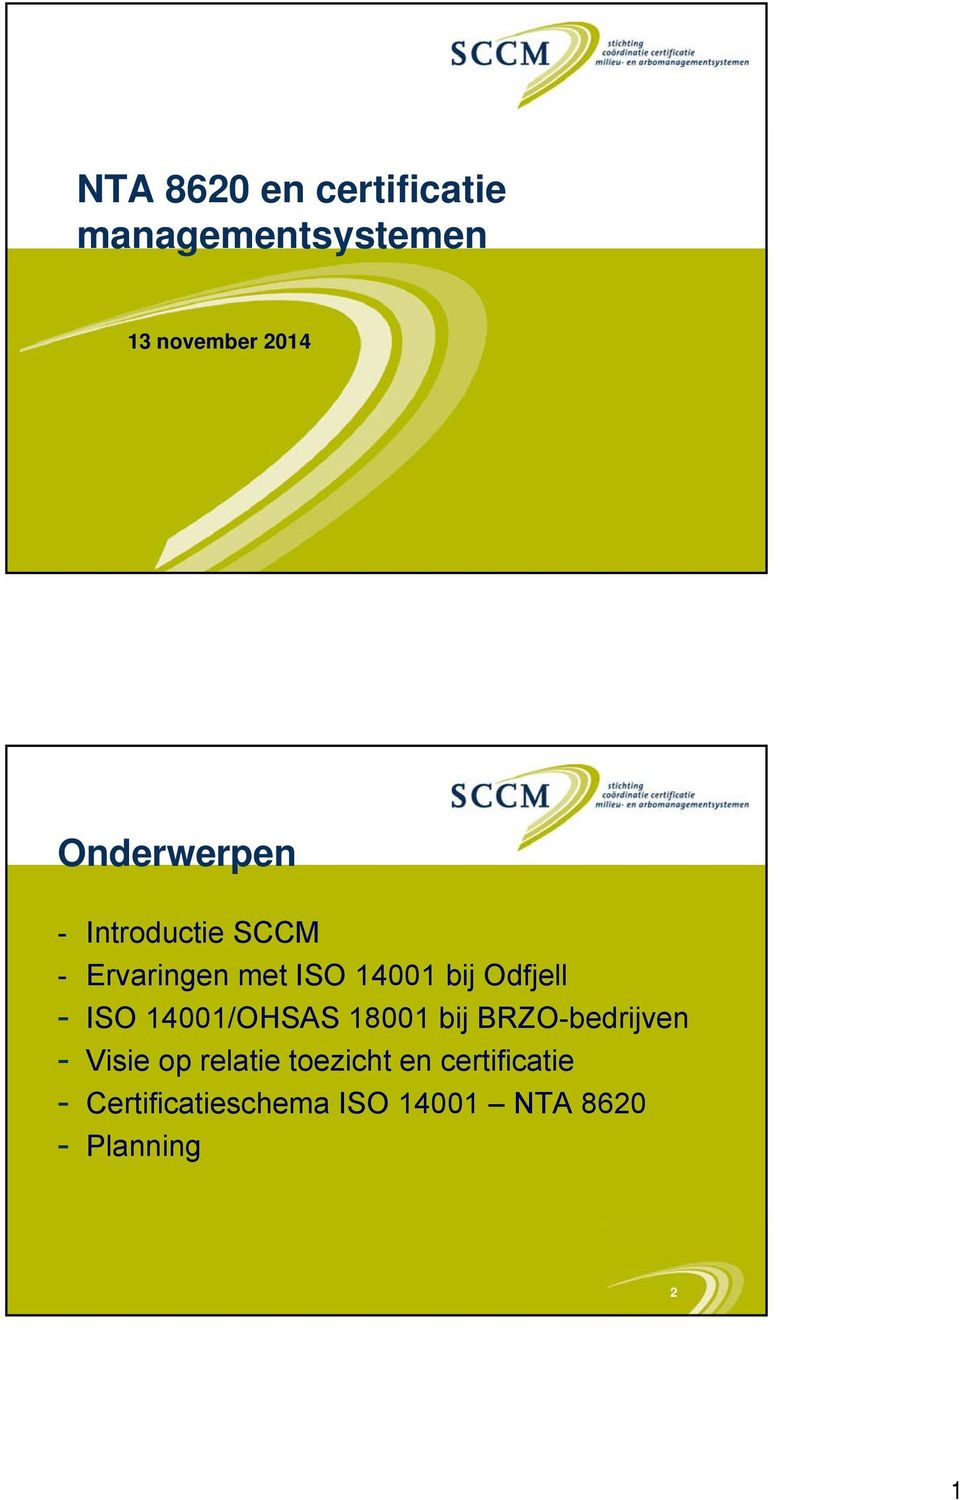 Odfjell - ISO 14001/OHSAS 18001 bij BRZO-bedrijven - Visie op